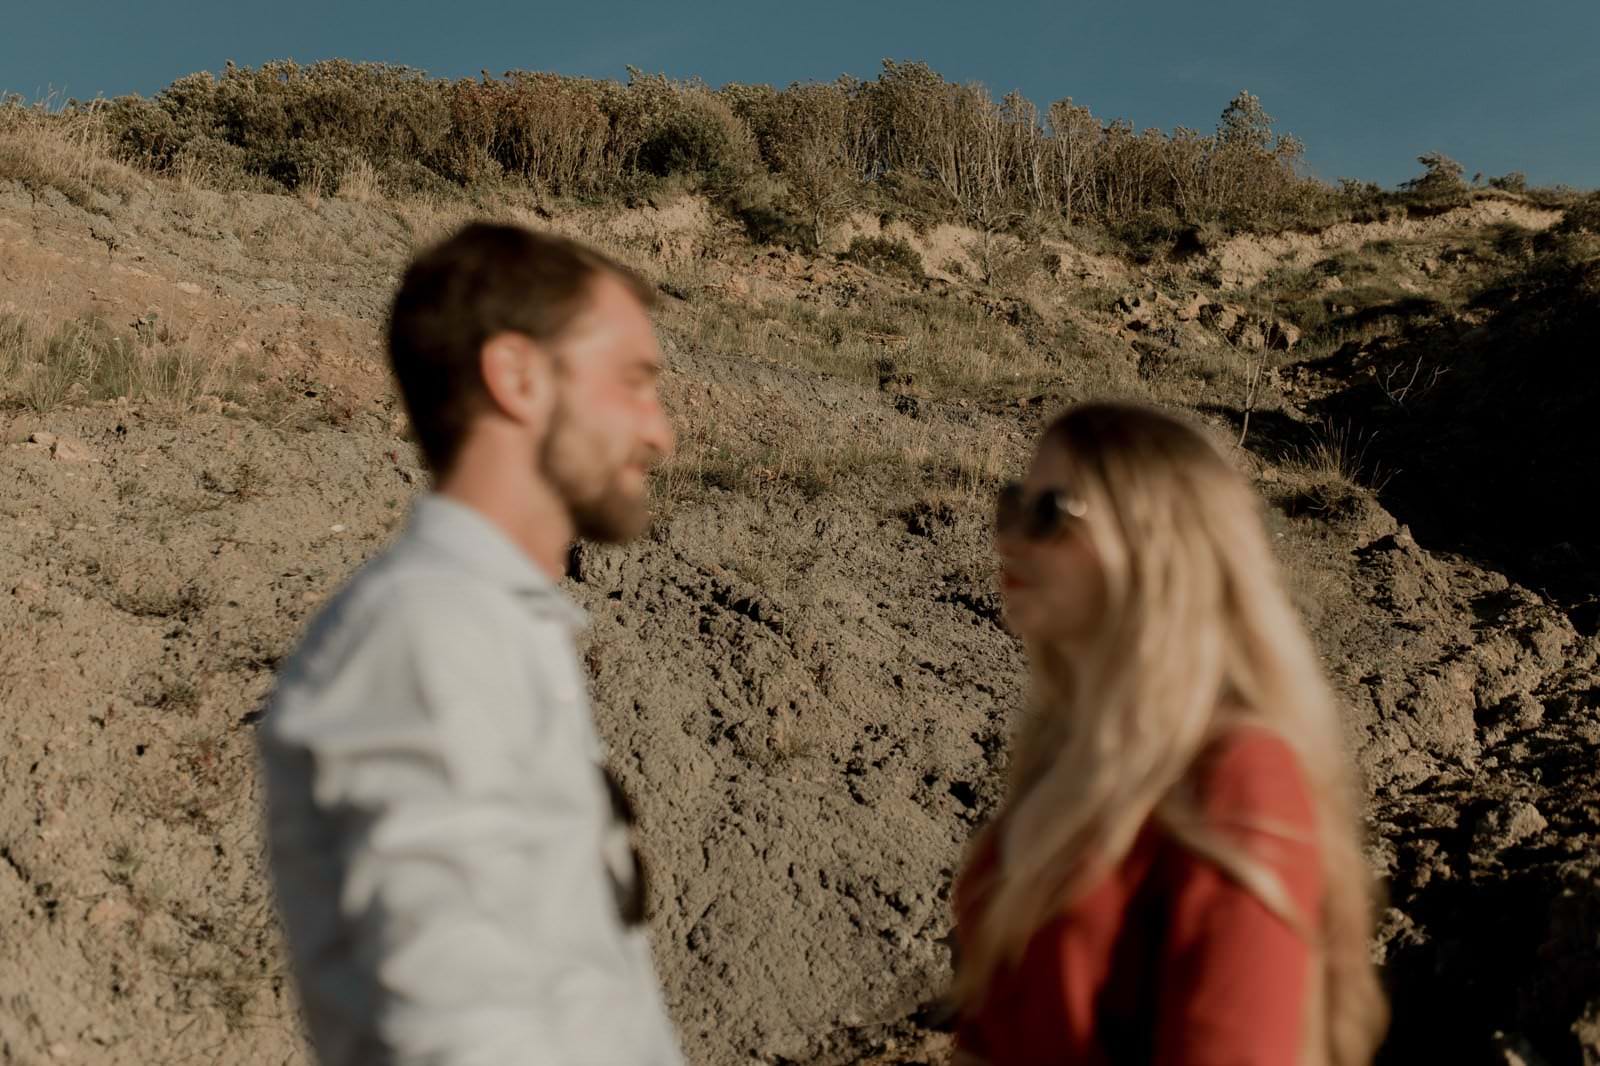 photographe vidéaste couple amoureux plage normandie engagement